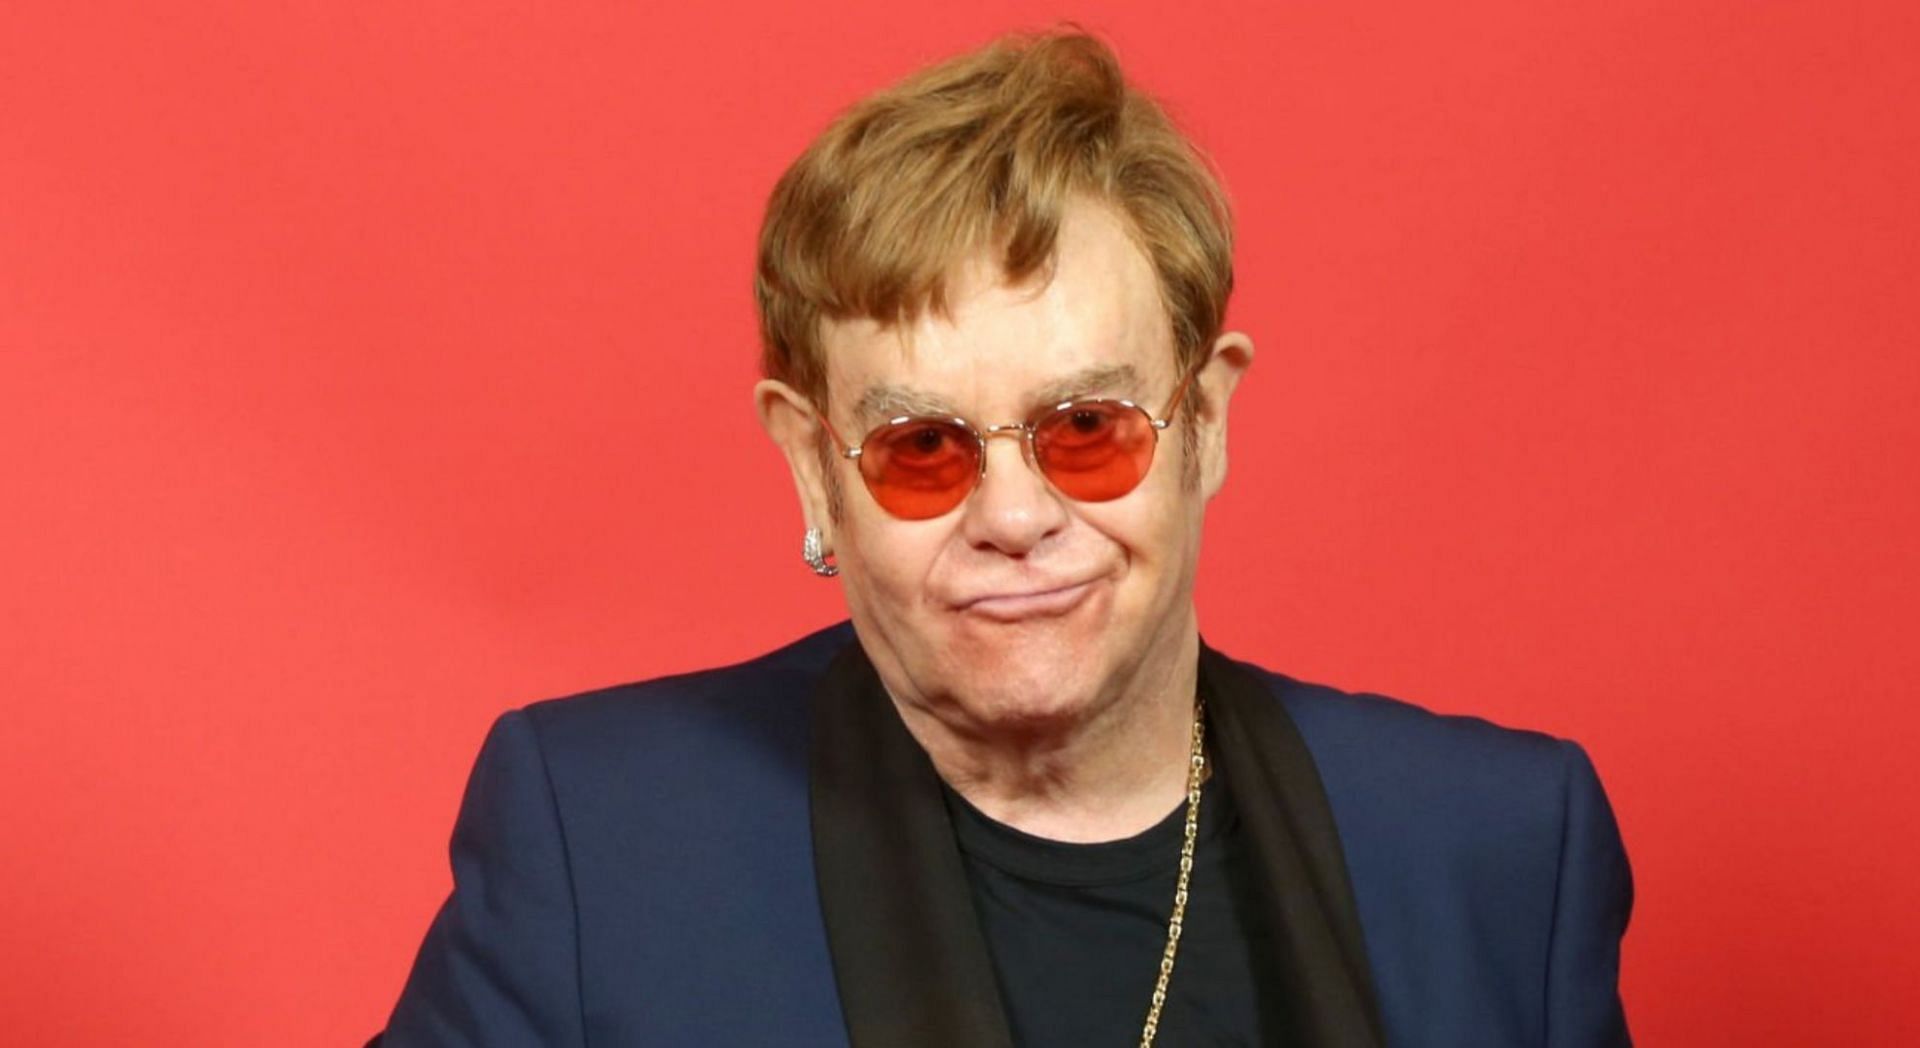 Elton John announced he wil be leaving Twitter over the platform